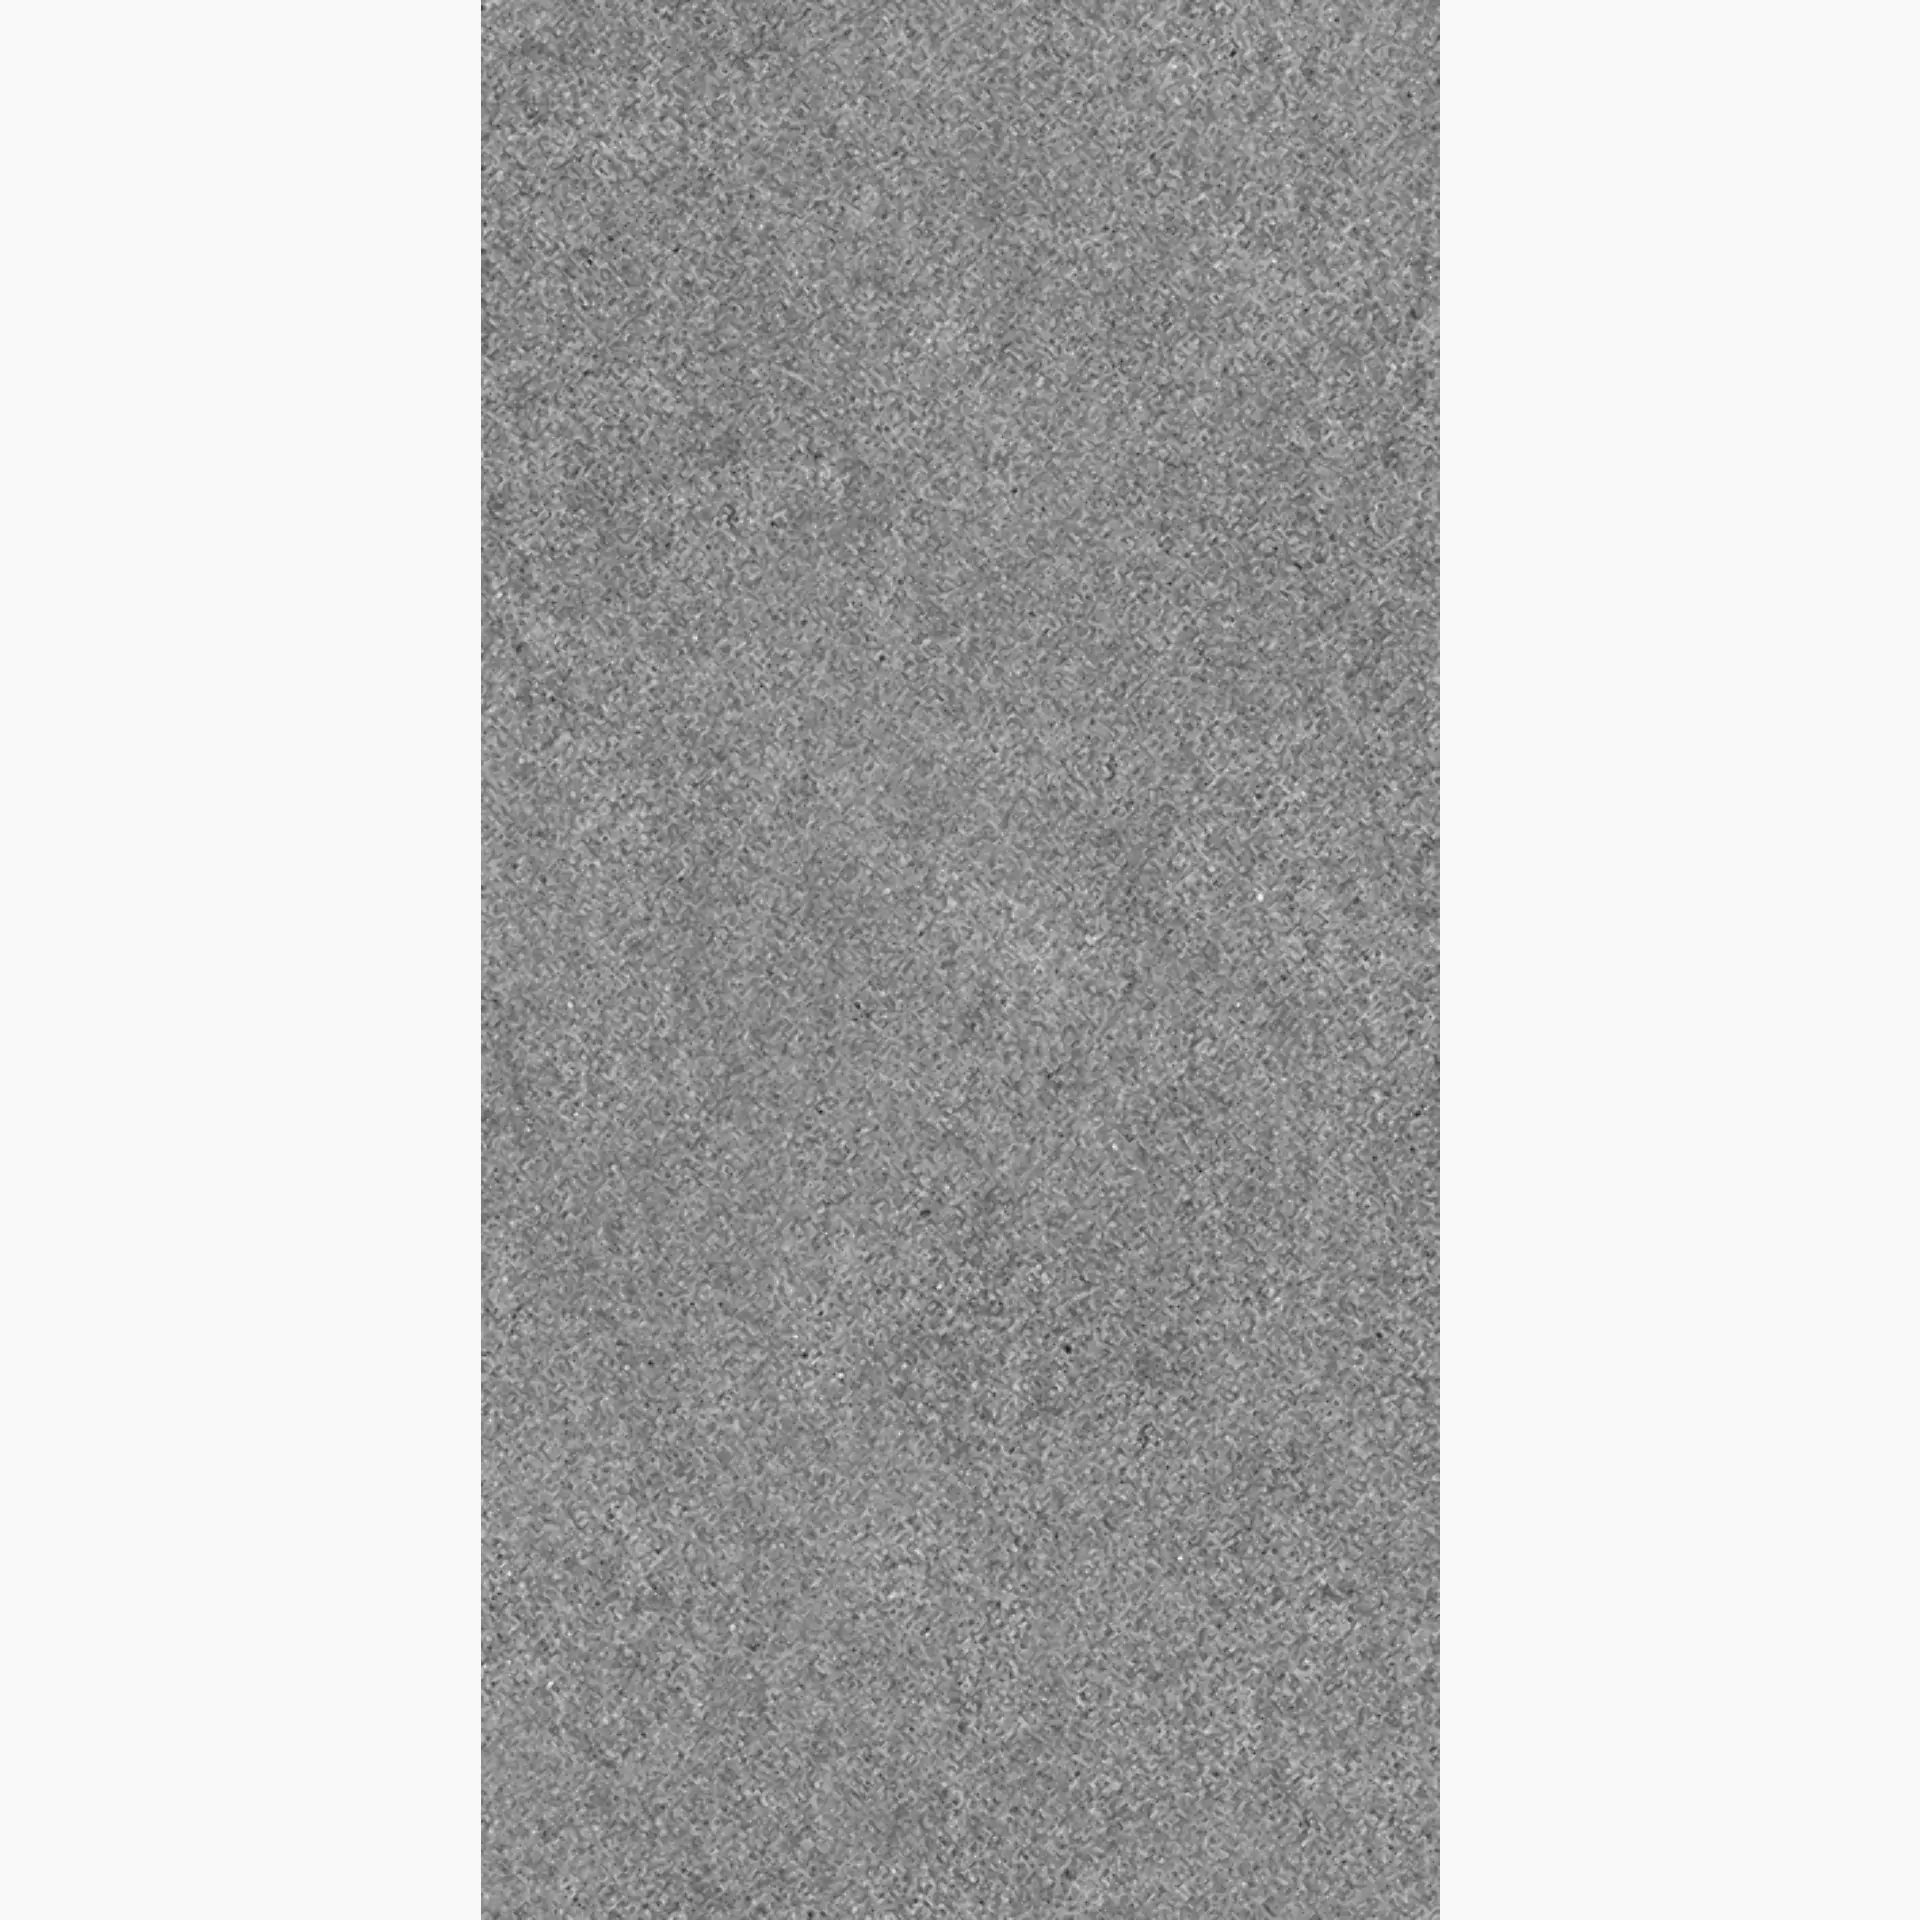 Wandfliese,Bodenfliese Villeroy & Boch Solid Tones Pure Stone Matt Pure Stone 2685-PS61 matt 30x60cm rektifiziert 10mm